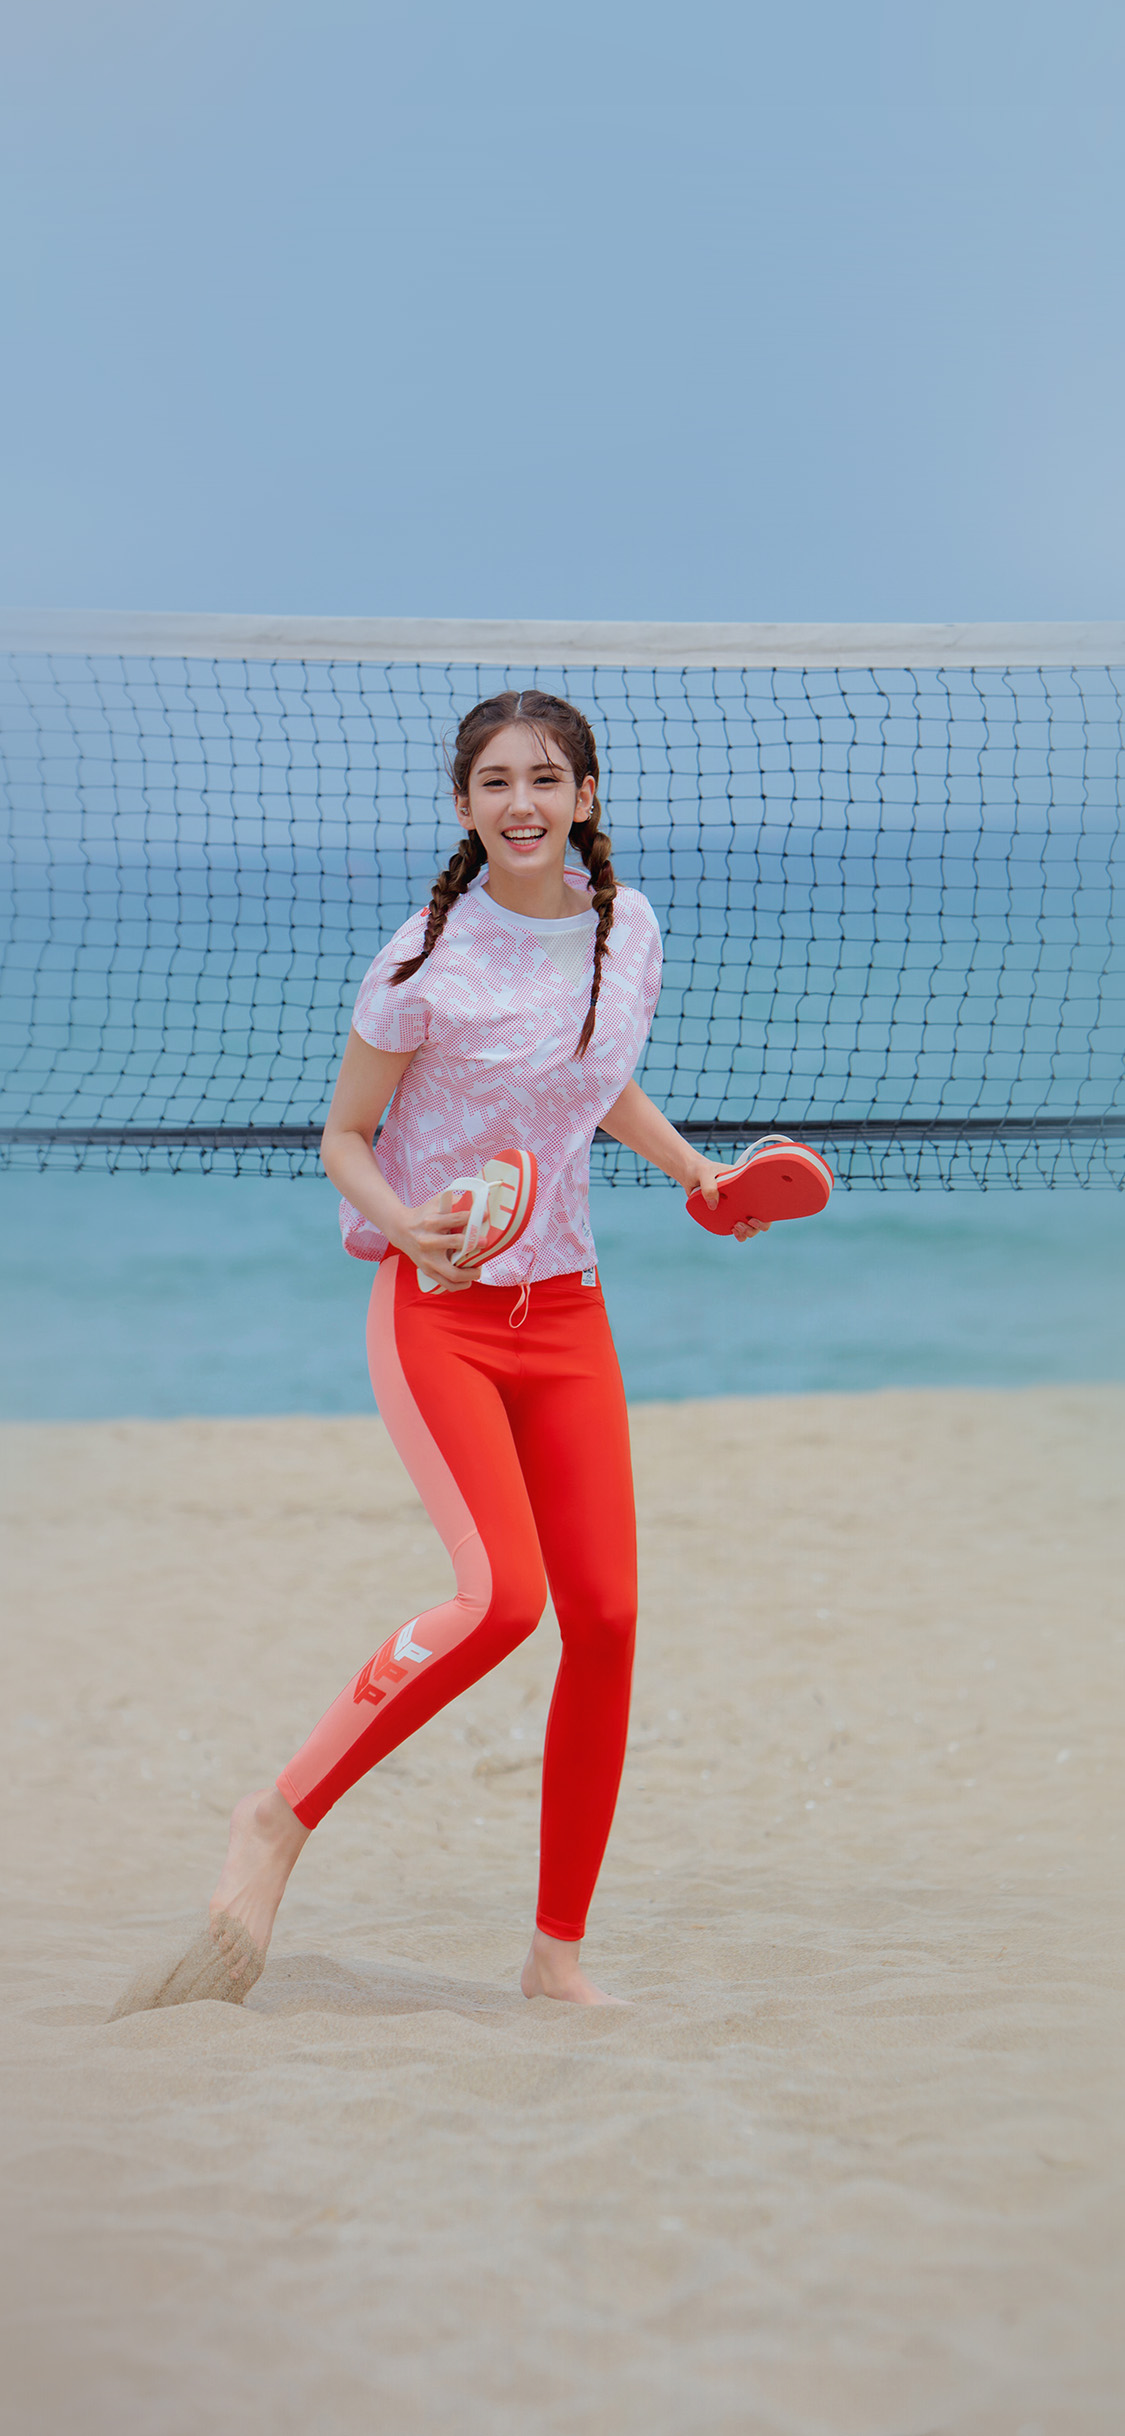 沙滩上穿红色运动裤开心玩沙滩排球的美女高清手机壁纸